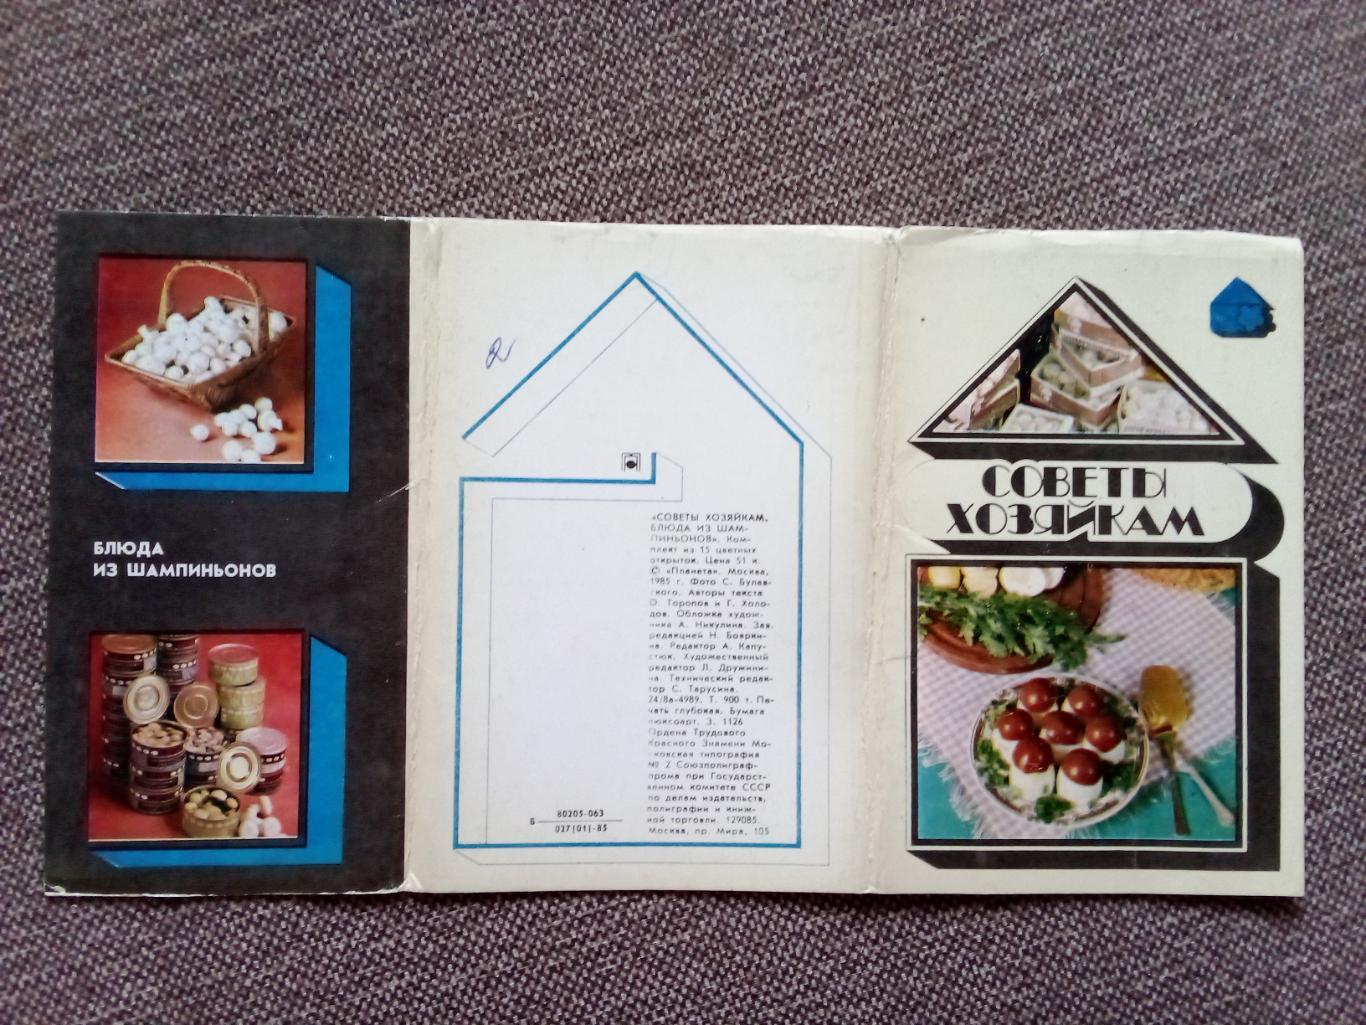 Советы хозяйкам - Блюда из шампиньонов 1985 г. полный набор - 15 открыток 1